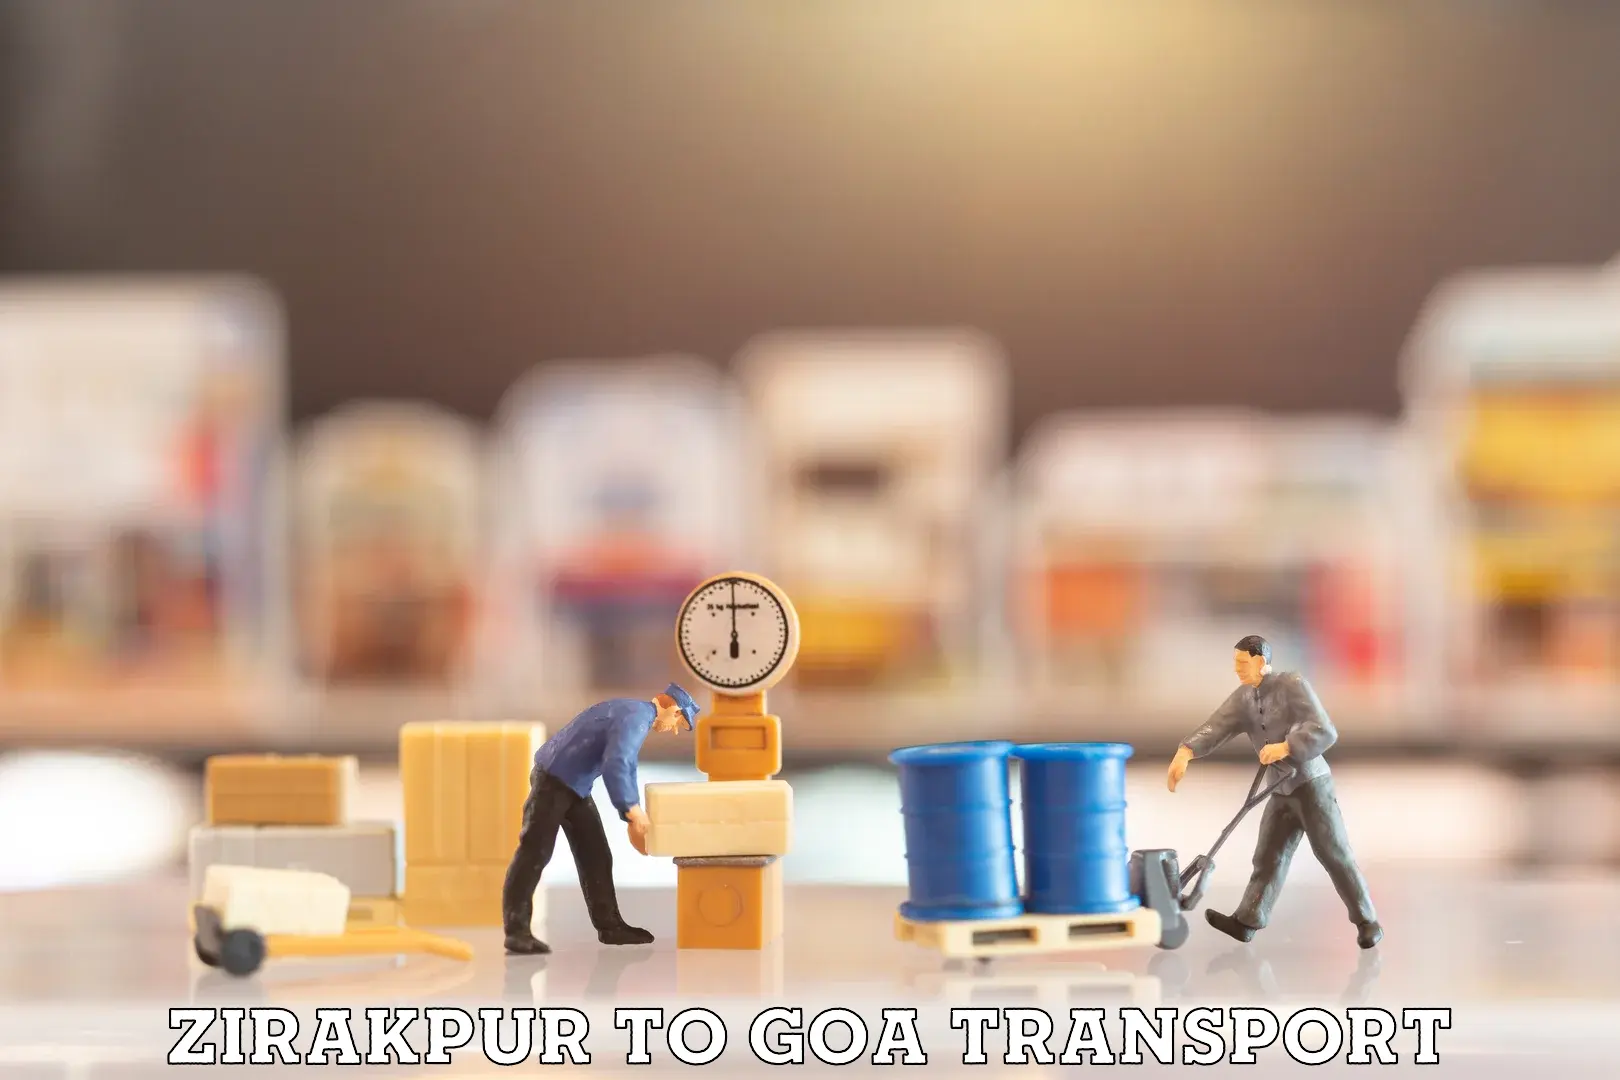 Daily transport service Zirakpur to Mormugao Port